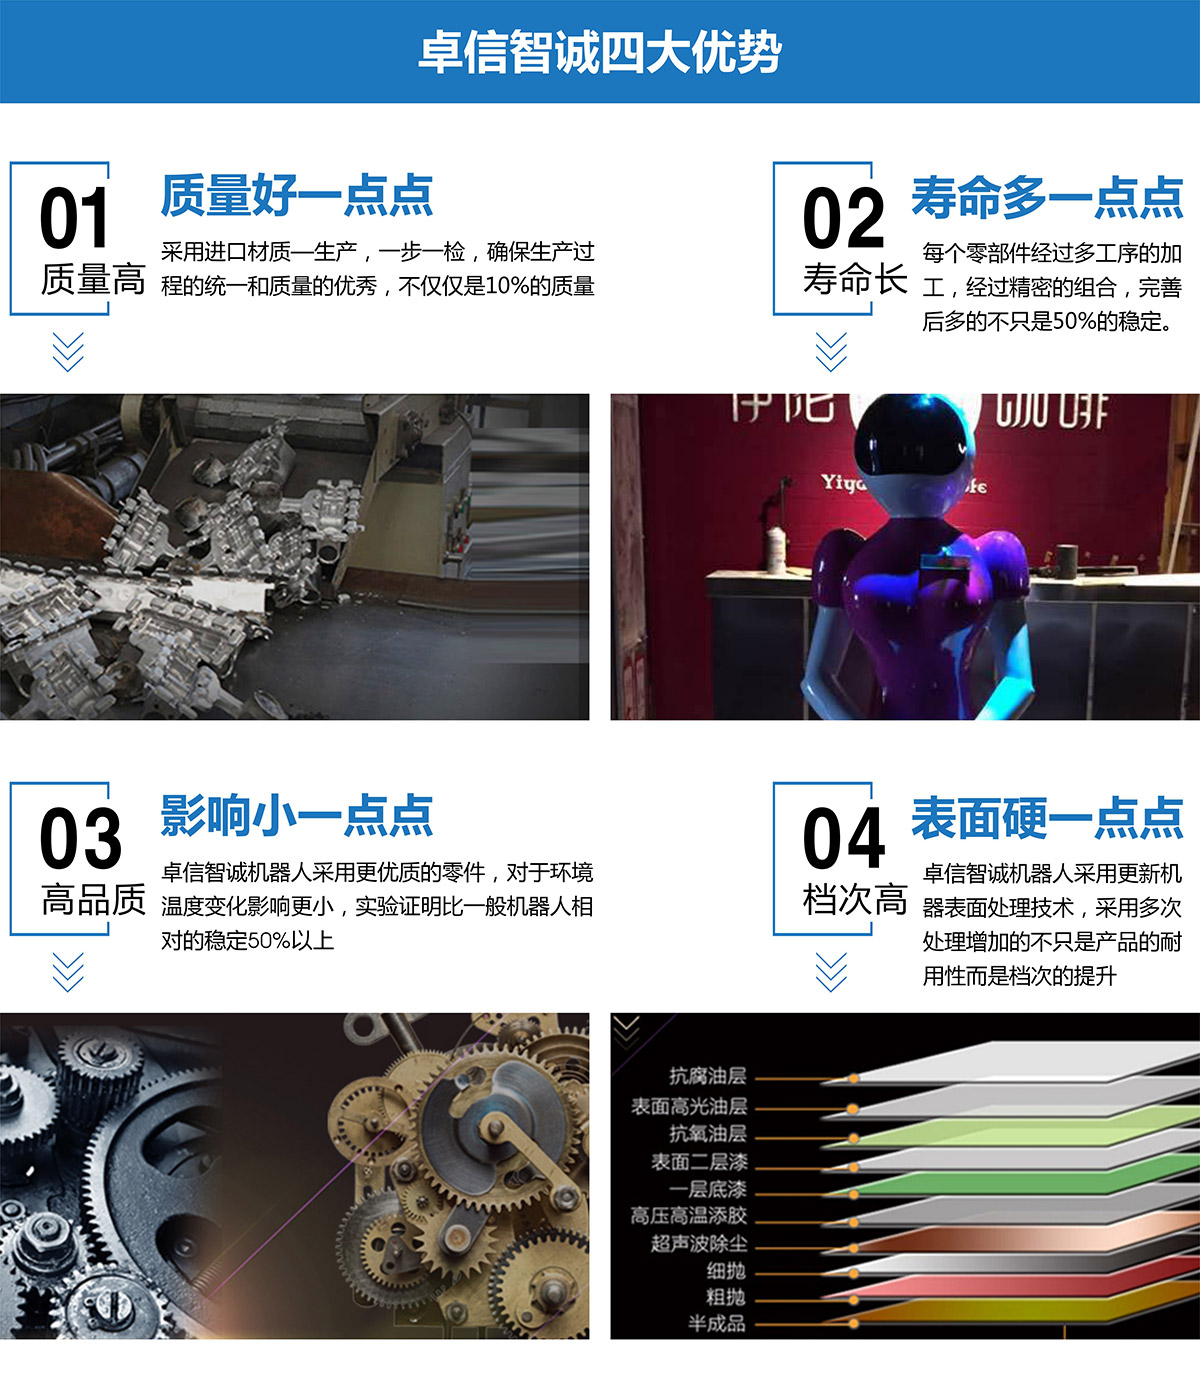 互动电影送餐机器人四大优势.jpg